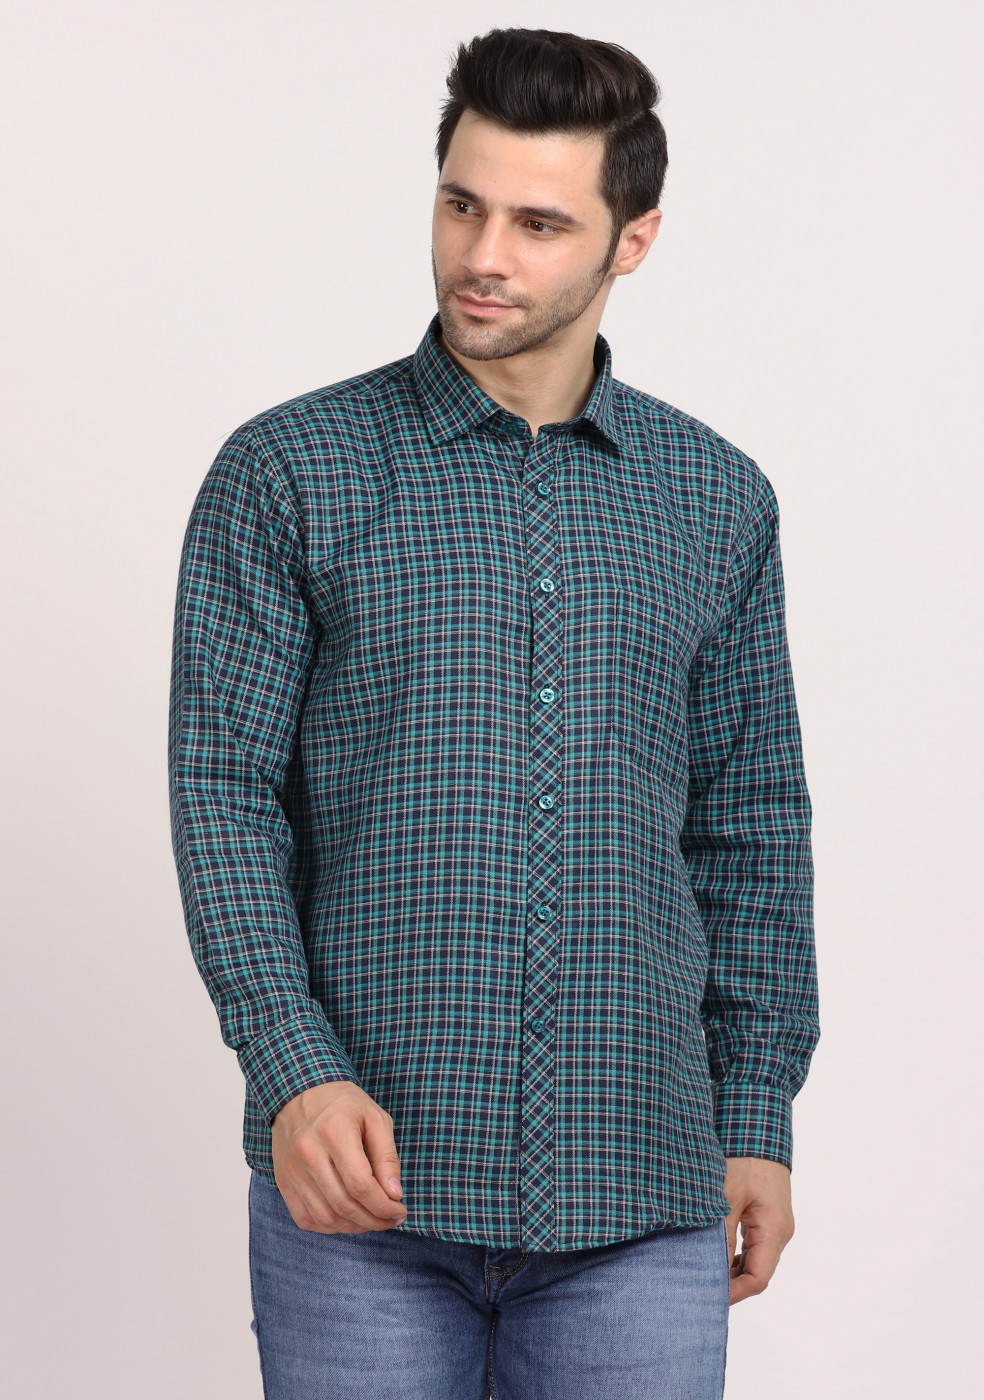 ASHTOM Small Check Light Green Regular Fit Cotton Shirt For Men